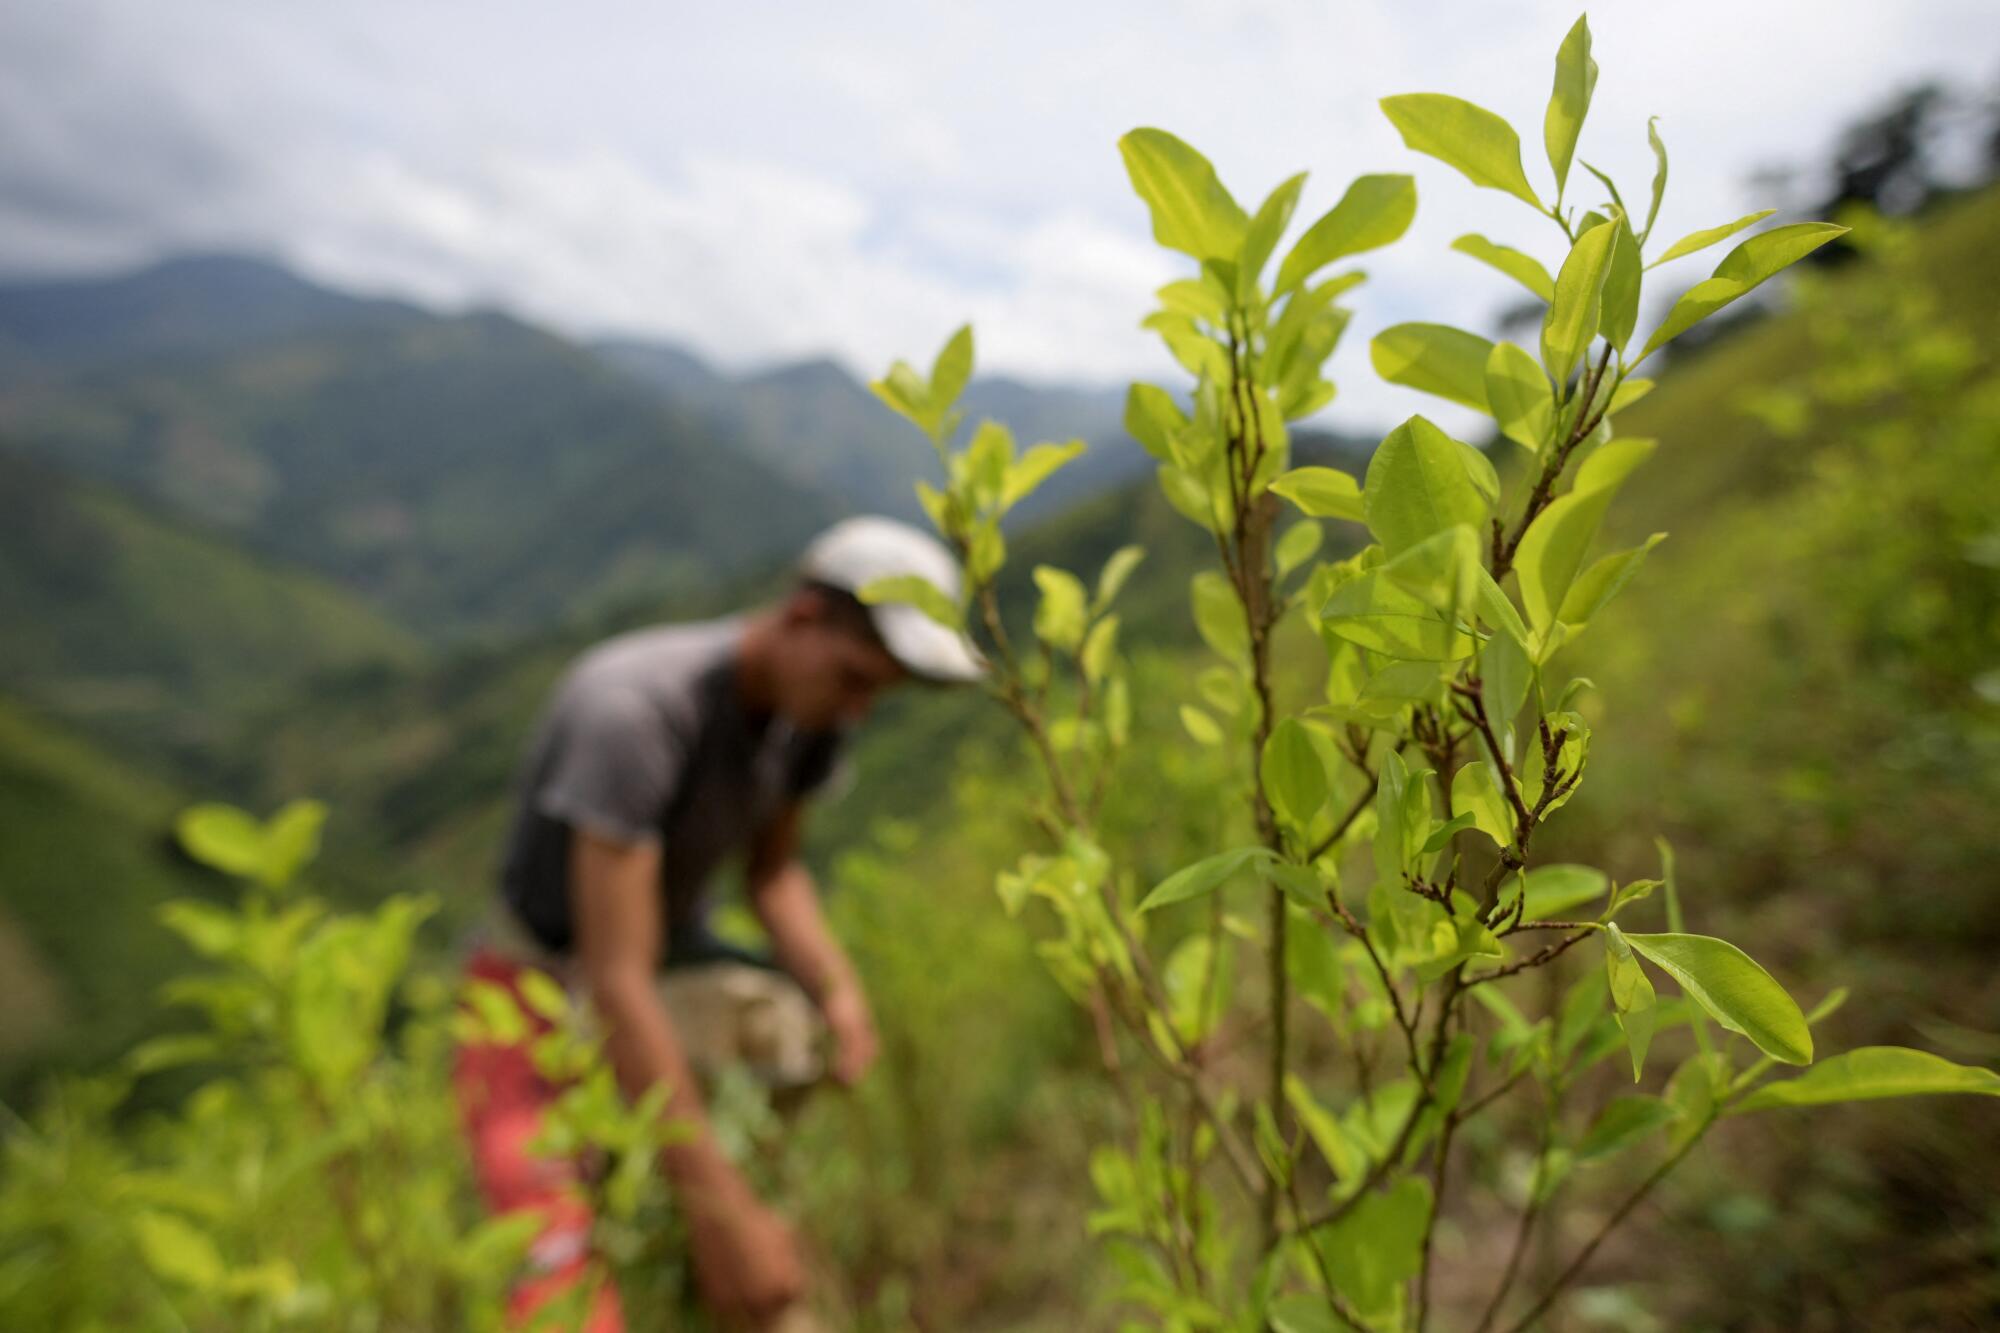 A raspachin, a coca leaf collector, works on a coca plantation 